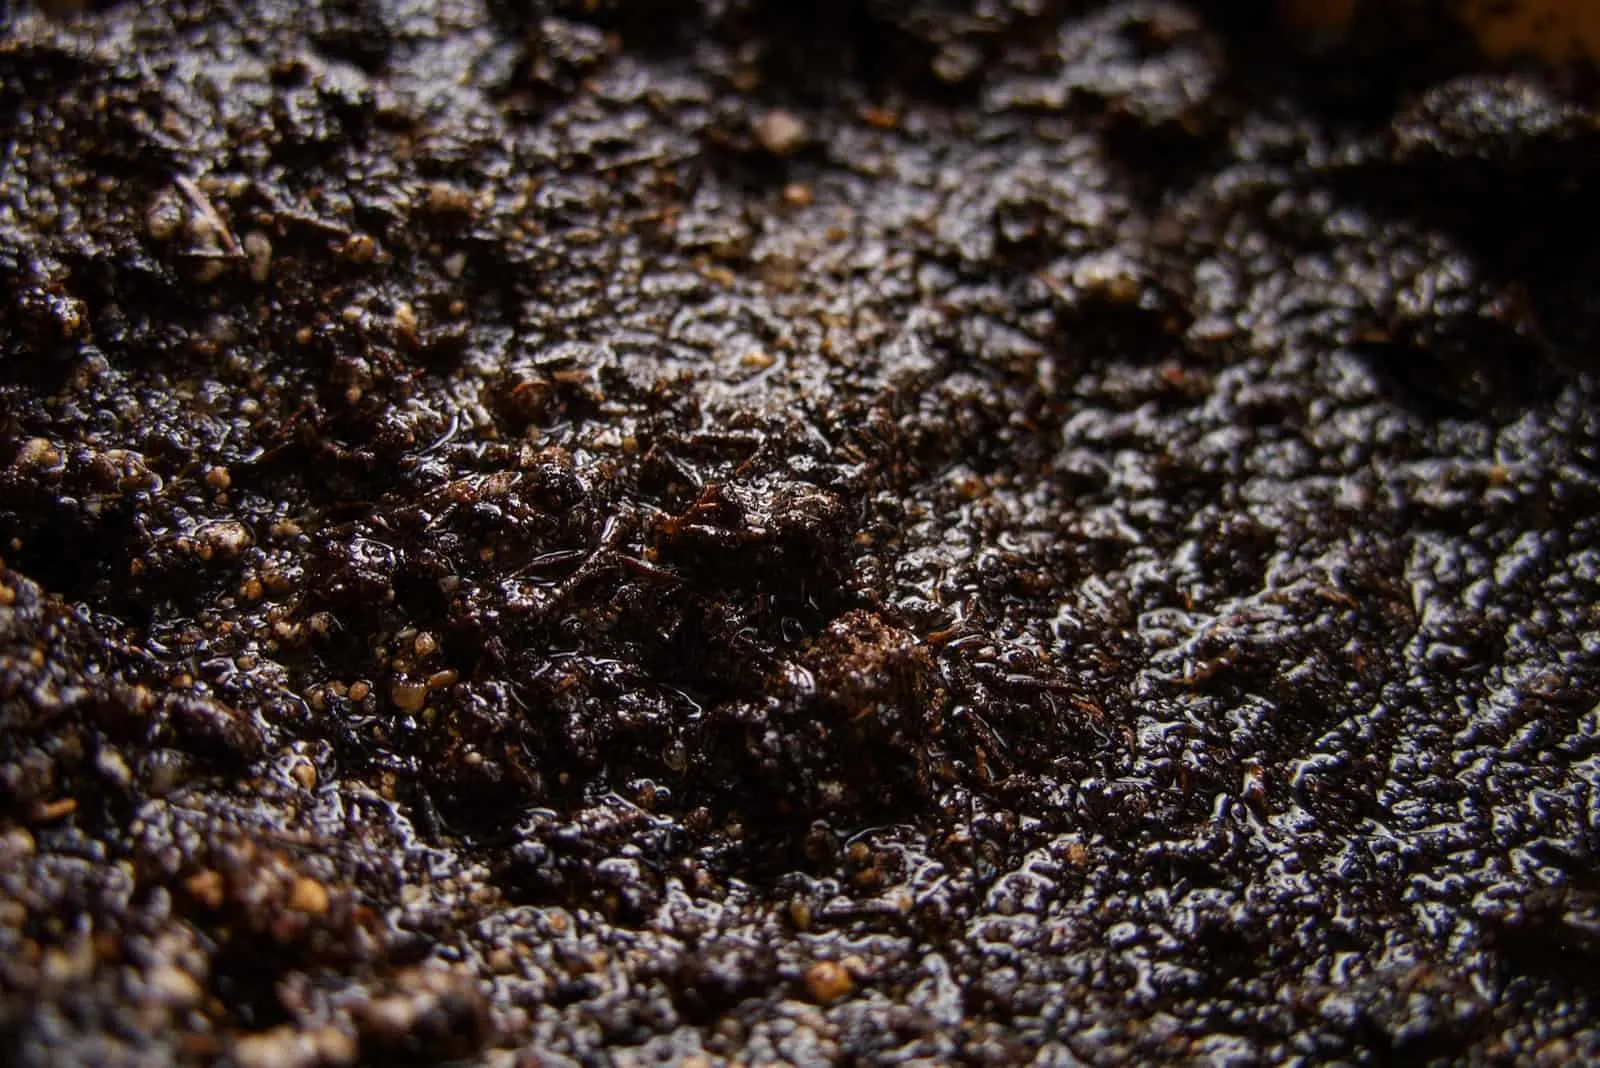 Wet soil in a pot